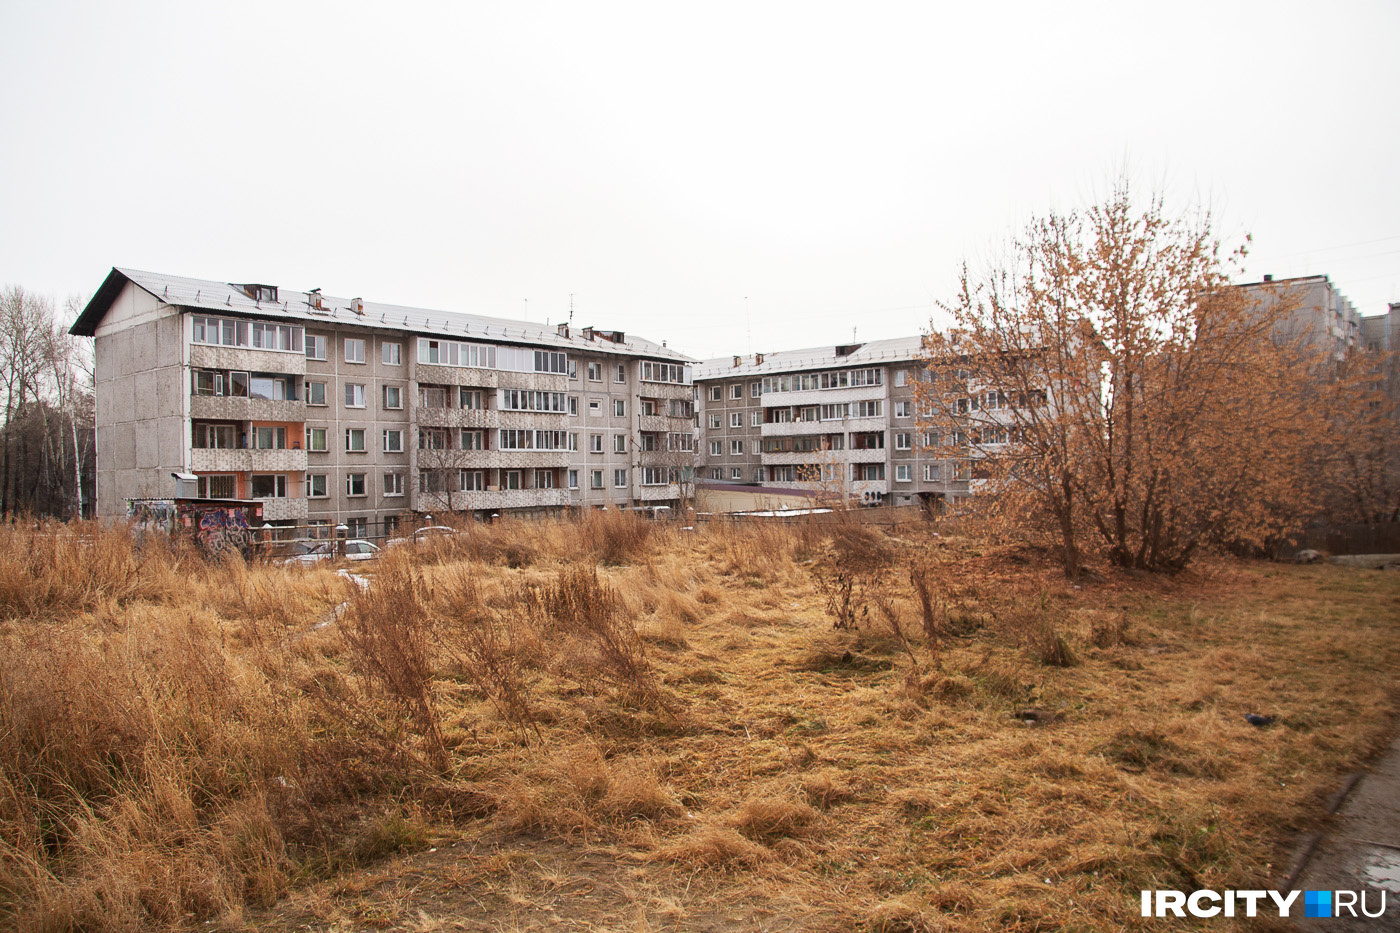 Путин поручил создать программу расселения жилья с дефицитом сейсмостойкости. В Приангарье речь может идти про хрущевки